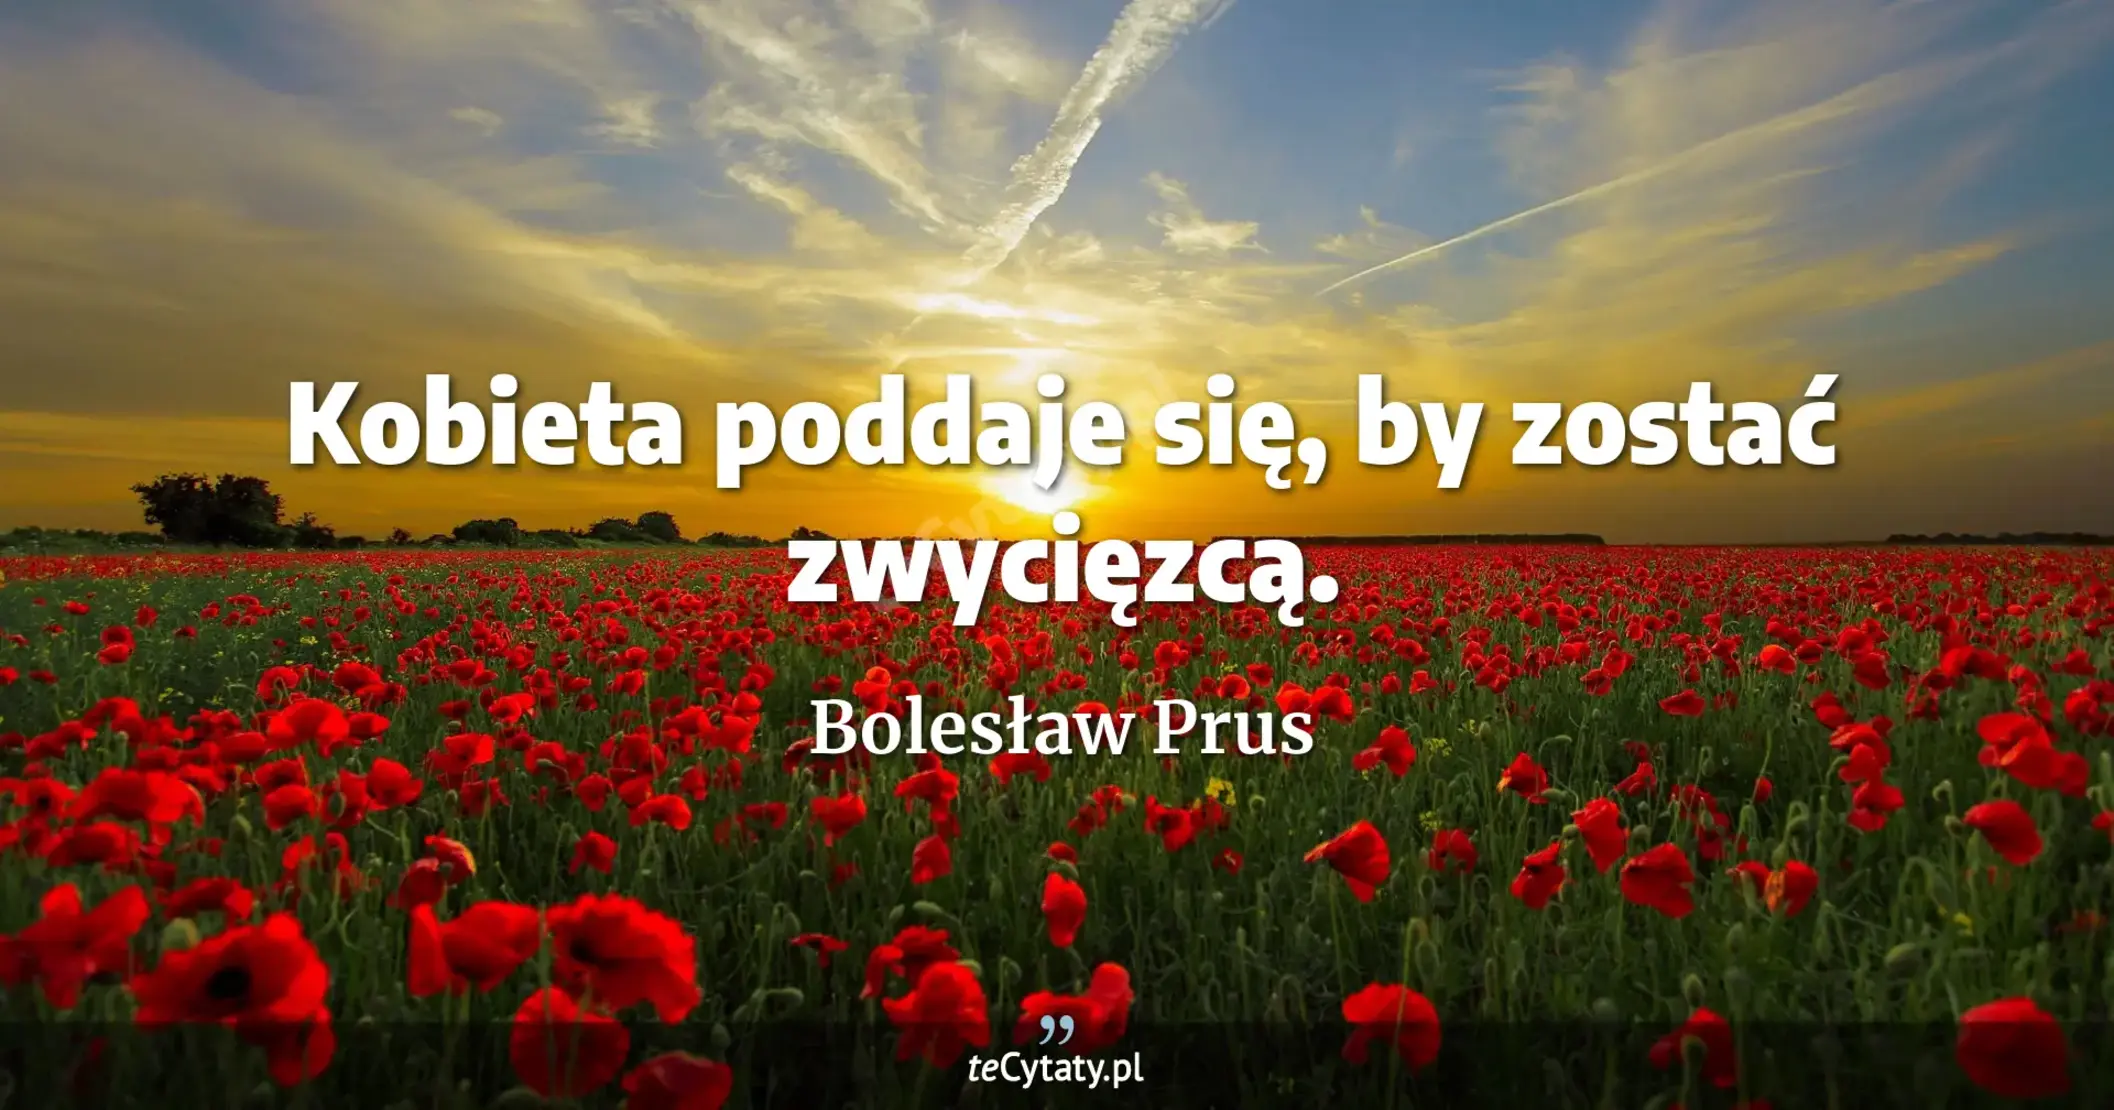 Kobieta poddaje się, by zostać zwycięzcą. - Bolesław Prus